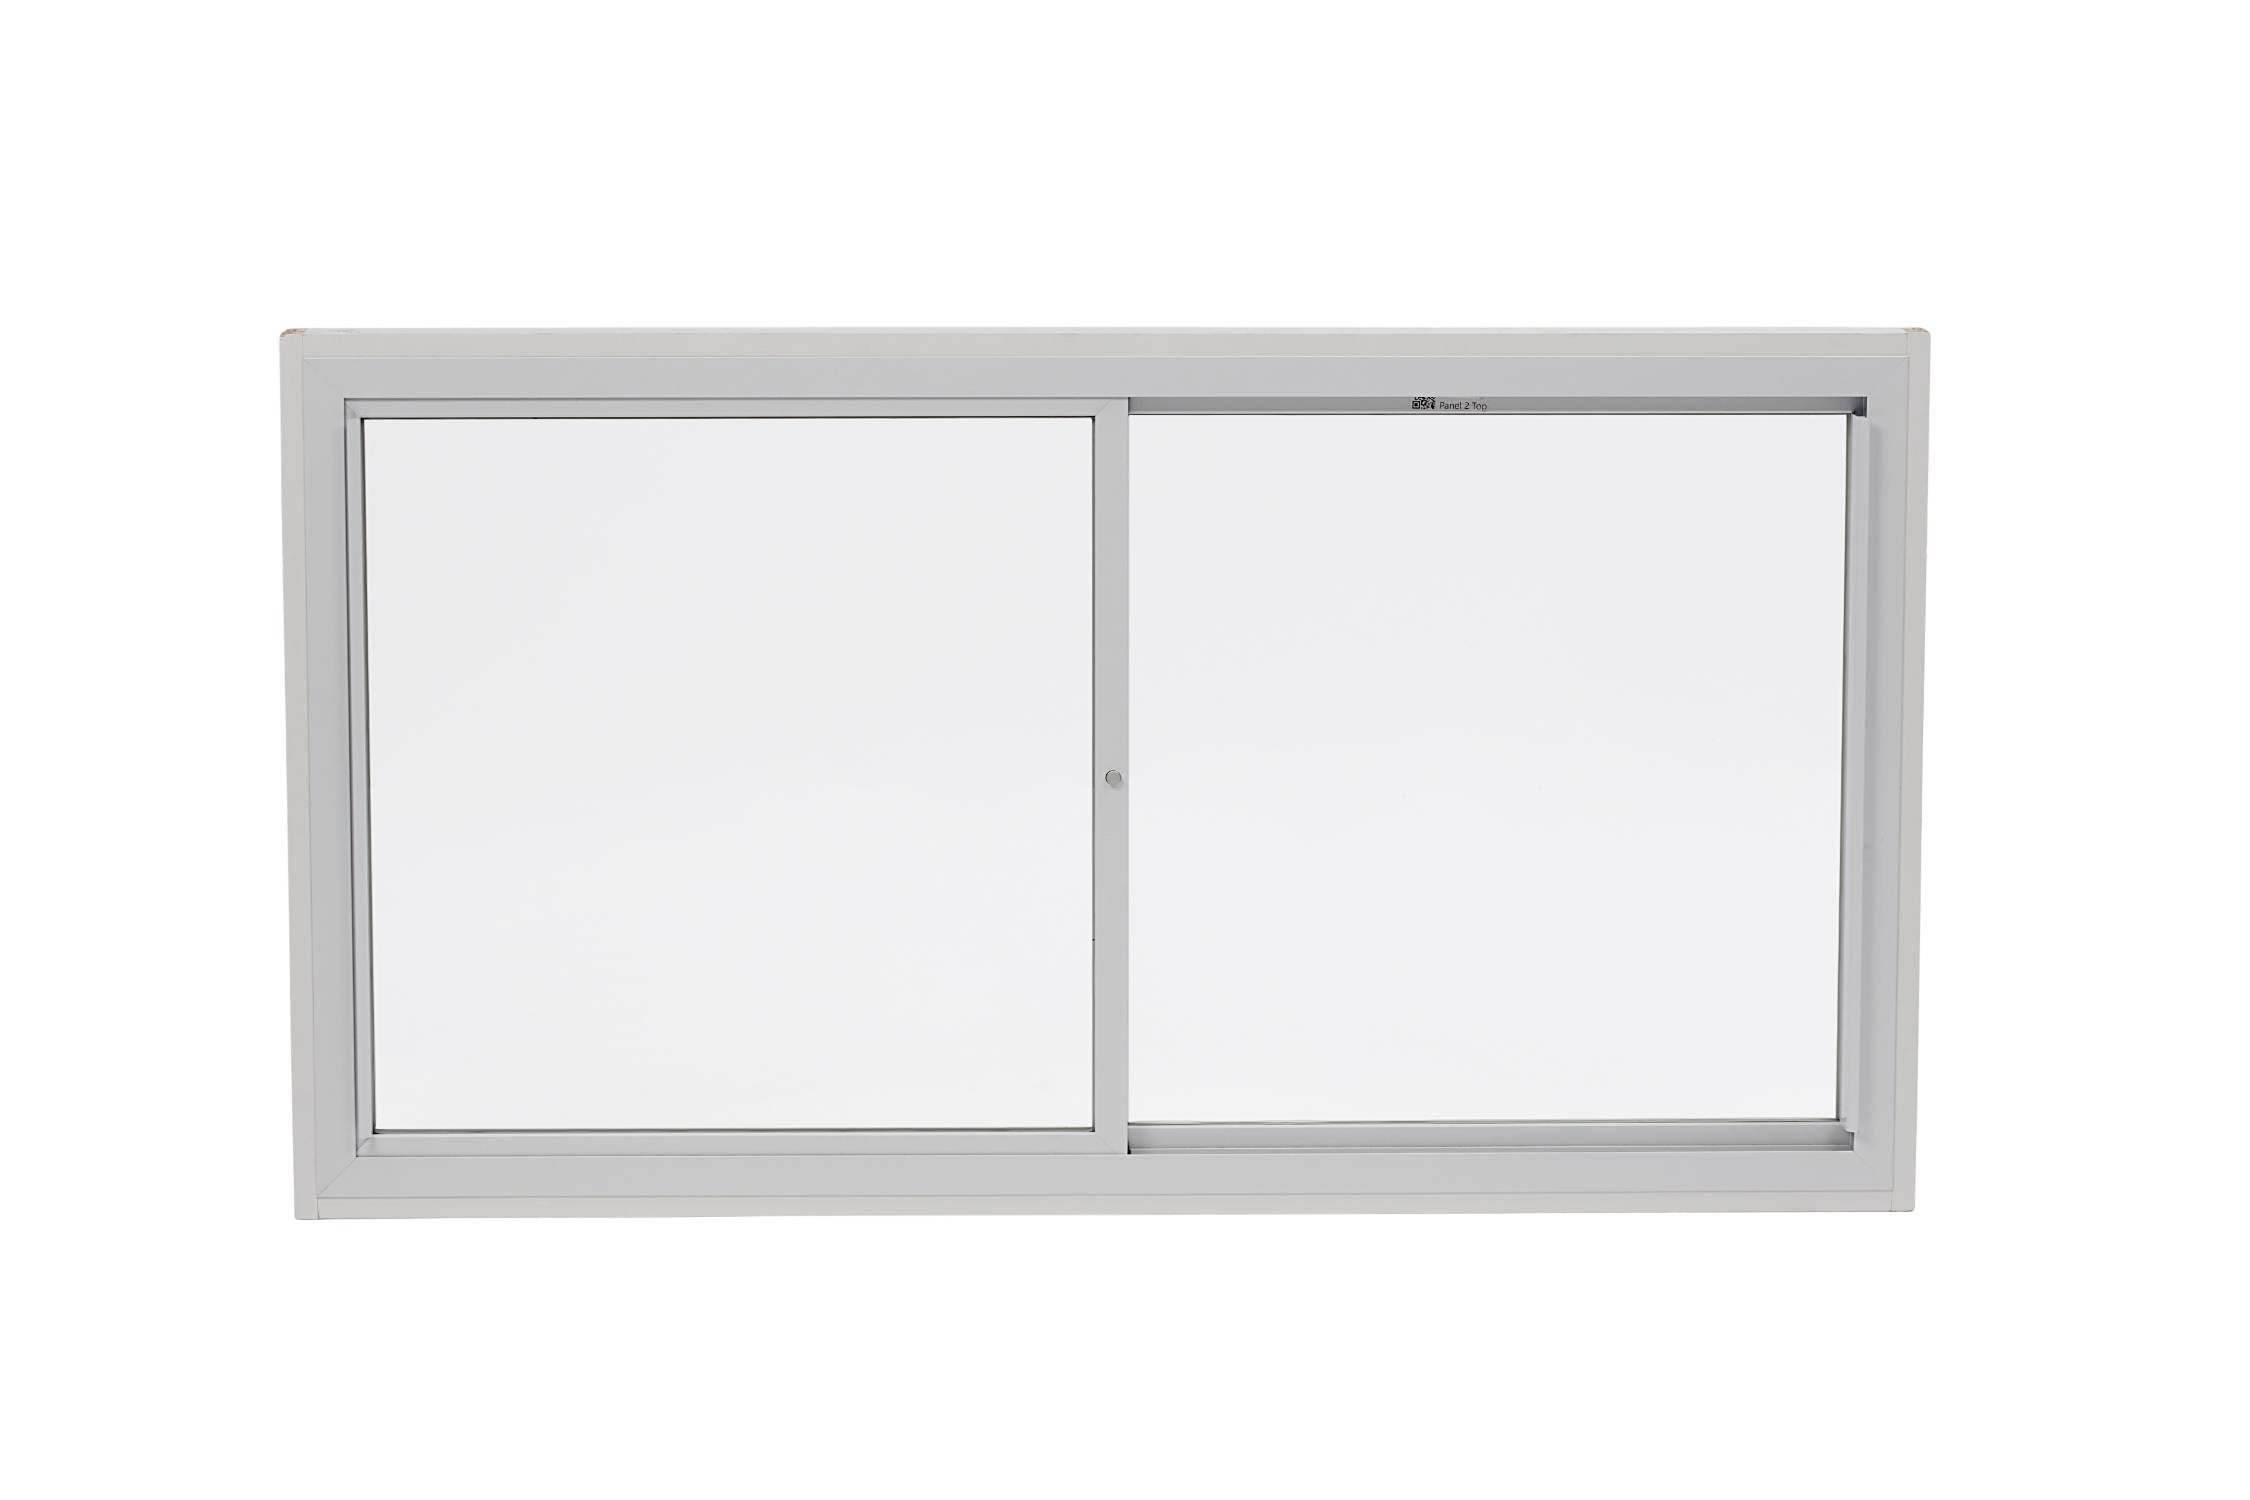 Horizontal Sliding Unit - Two Panel - Secondary Glazing Unit